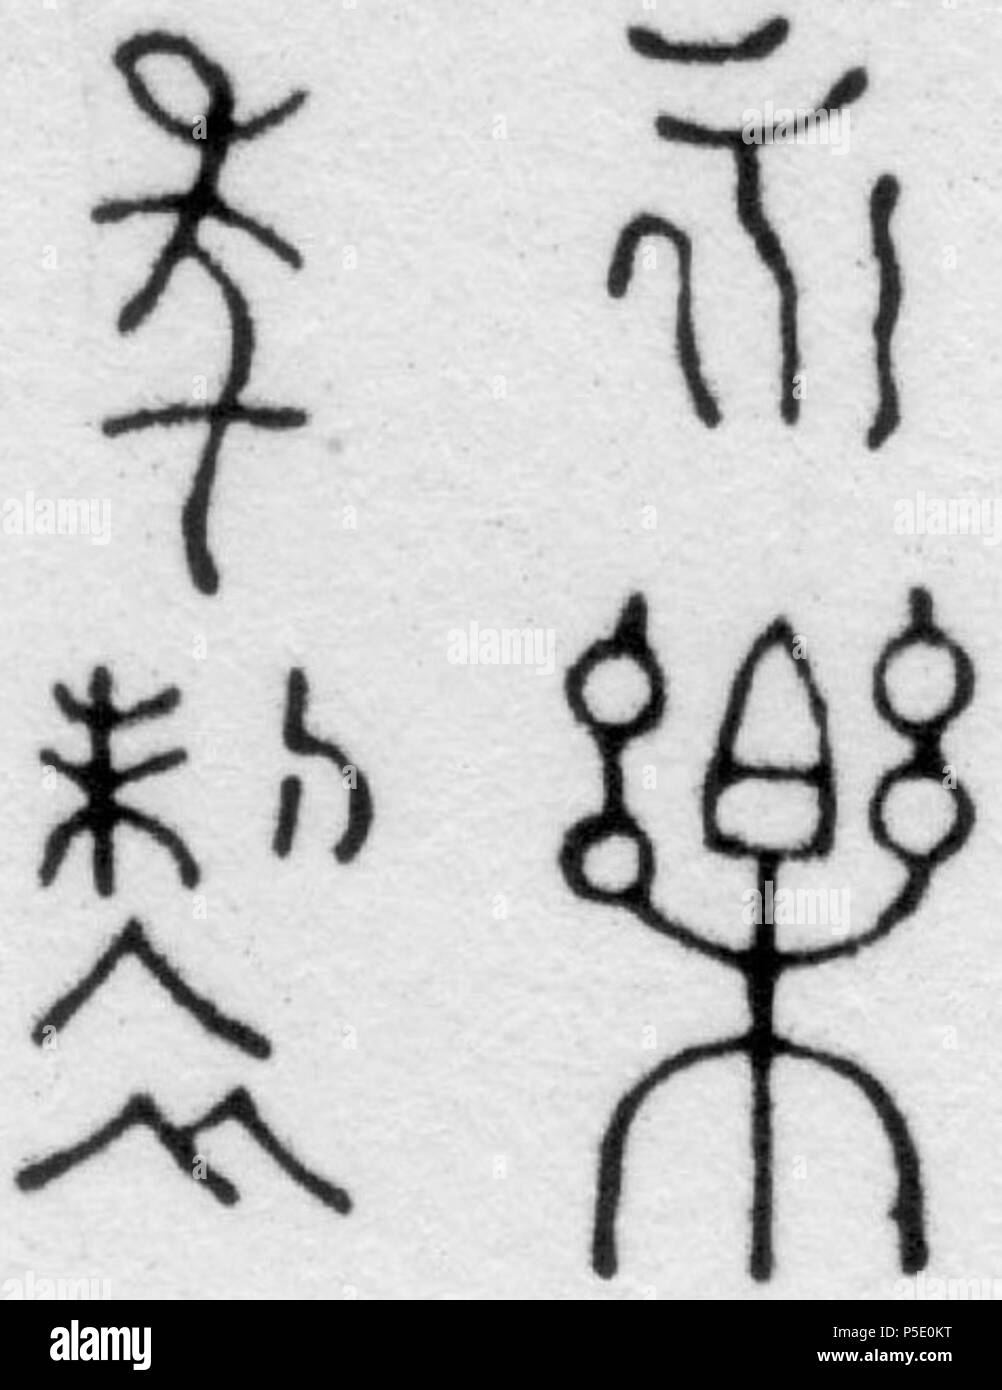 N/A. Inglés: Yongle (dinastía Ming) marca de porcelana. La inscripción se lee de arriba a abajo y de izquierda a derecha: Nian (período) Zhi (make) Yong Le (emperador Yongle). Después de 1402. 16 desconocido Yongle de la Dinastía Ming (1402-1424) marca de porcelana 02 Foto de stock